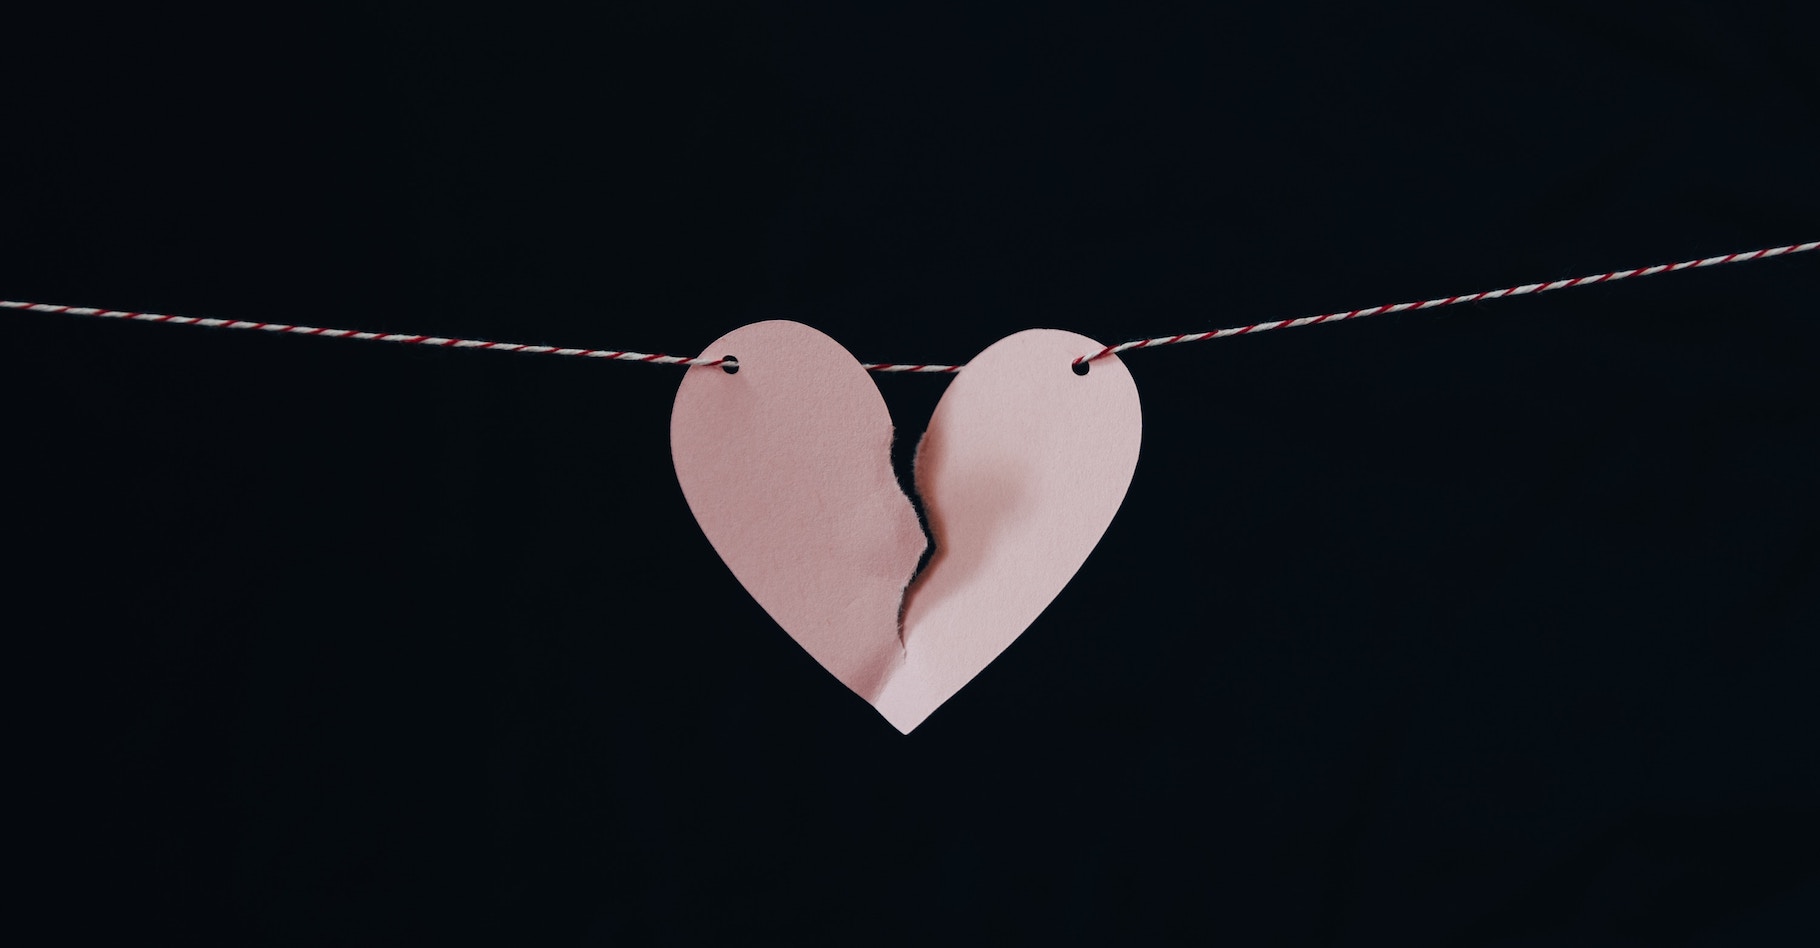 L’amour peut briser les cœurs. Au sens propre du terme. Les spécialistes parlent alors de cardiomyopathie de Tako-Tsubo. © Kelly Sikkema, Unsplash